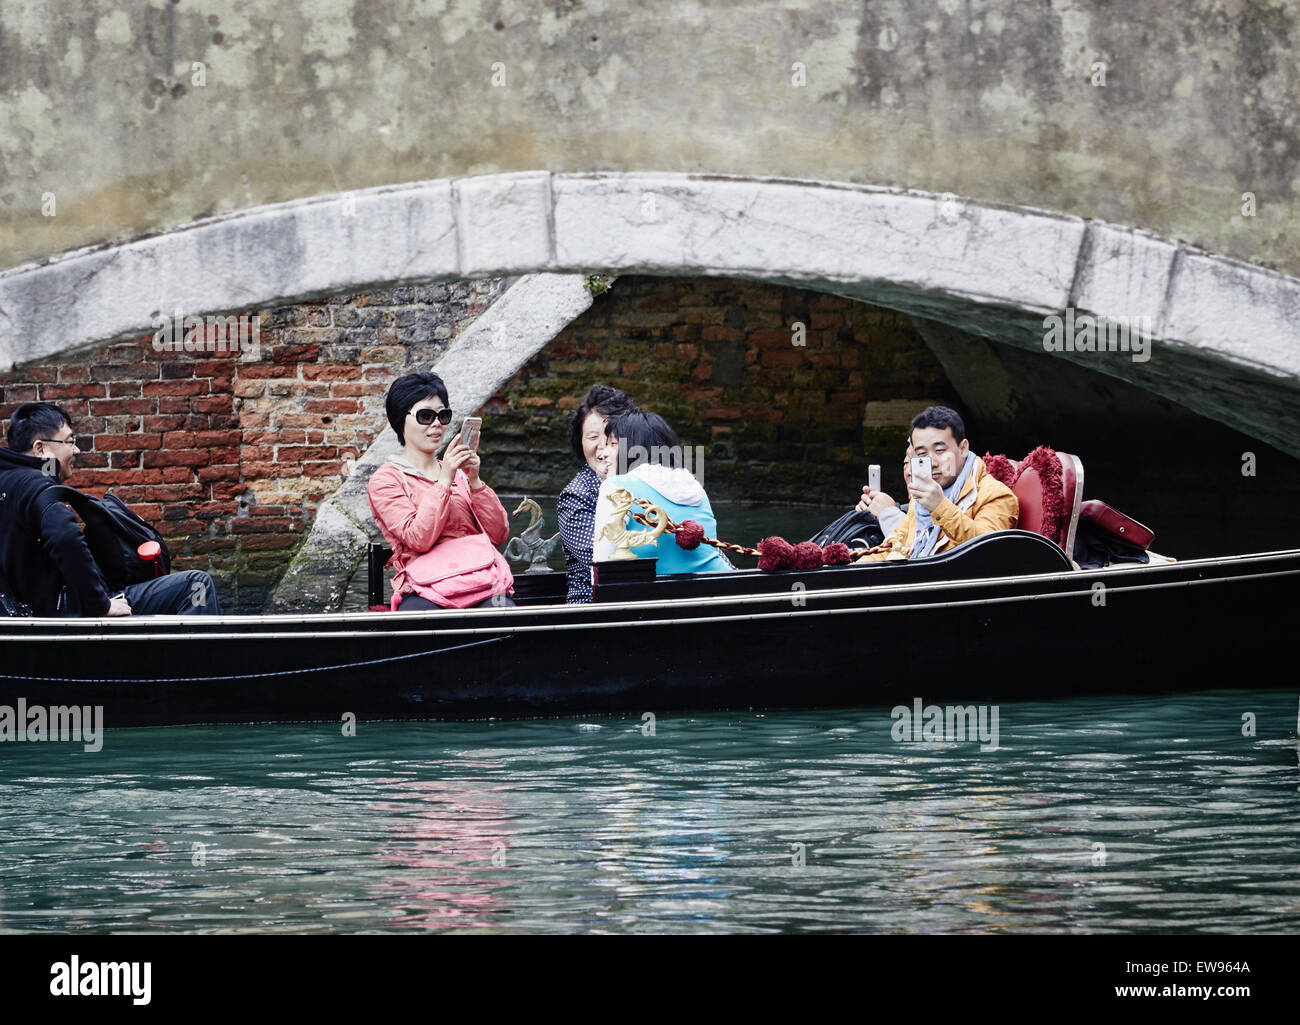 Asiatische Touristen Fotografieren Auf Dem Handy Wie Ihre Gondel Unter Einer Brucke Venedig Veneto Italien Europa Geht Stockfotografie Alamy